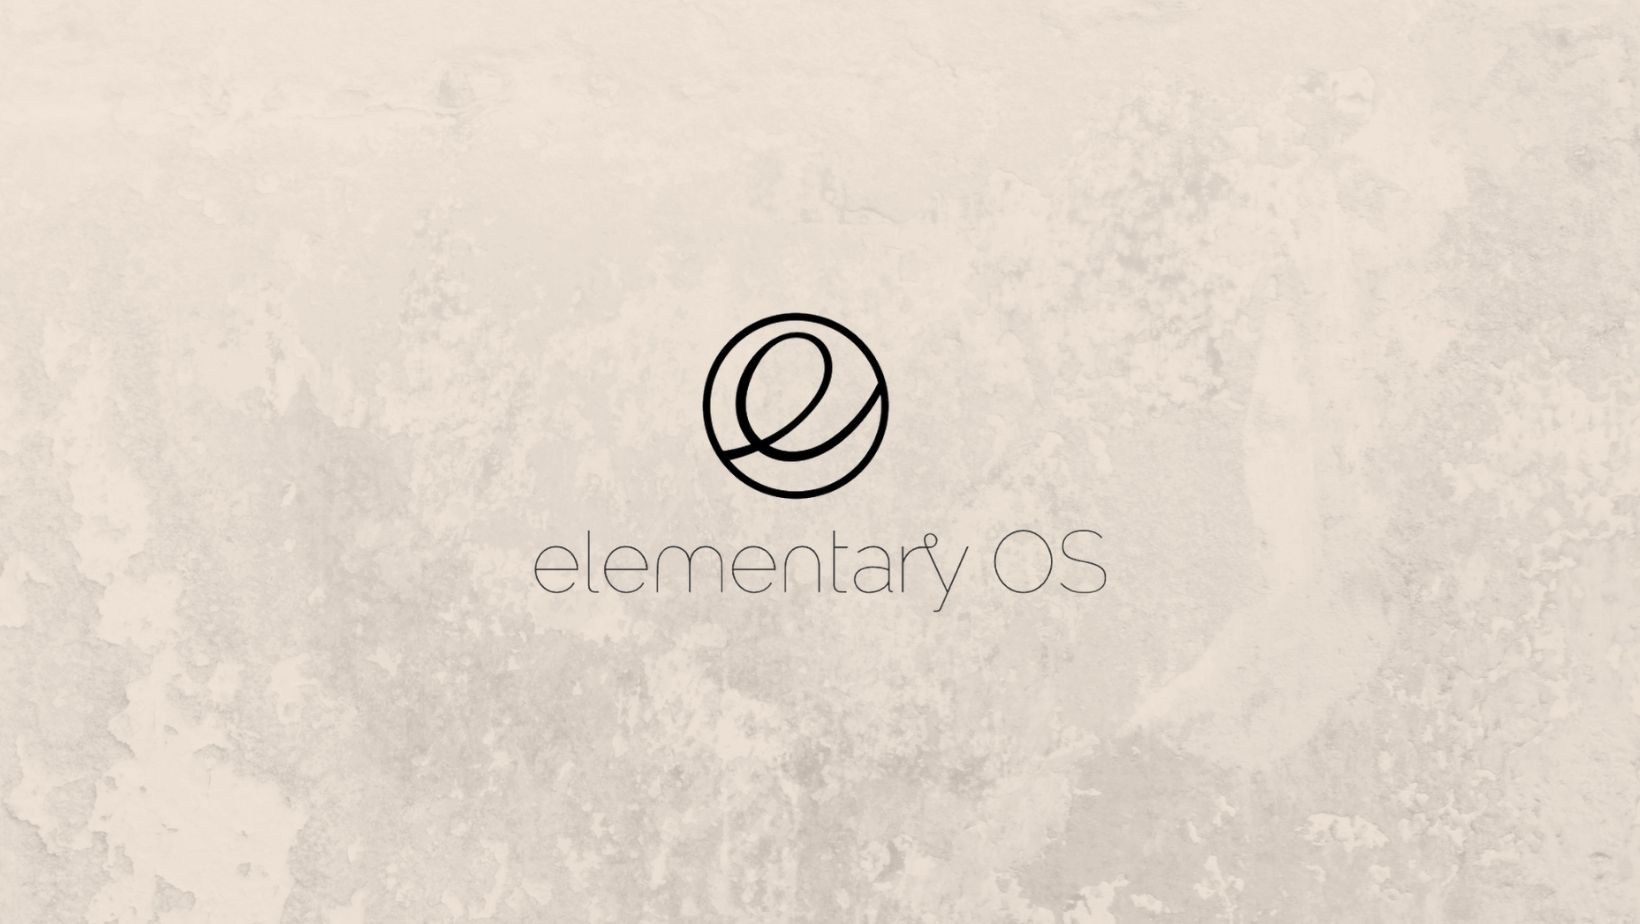 Az Elementary OS linux disztribúció részletei